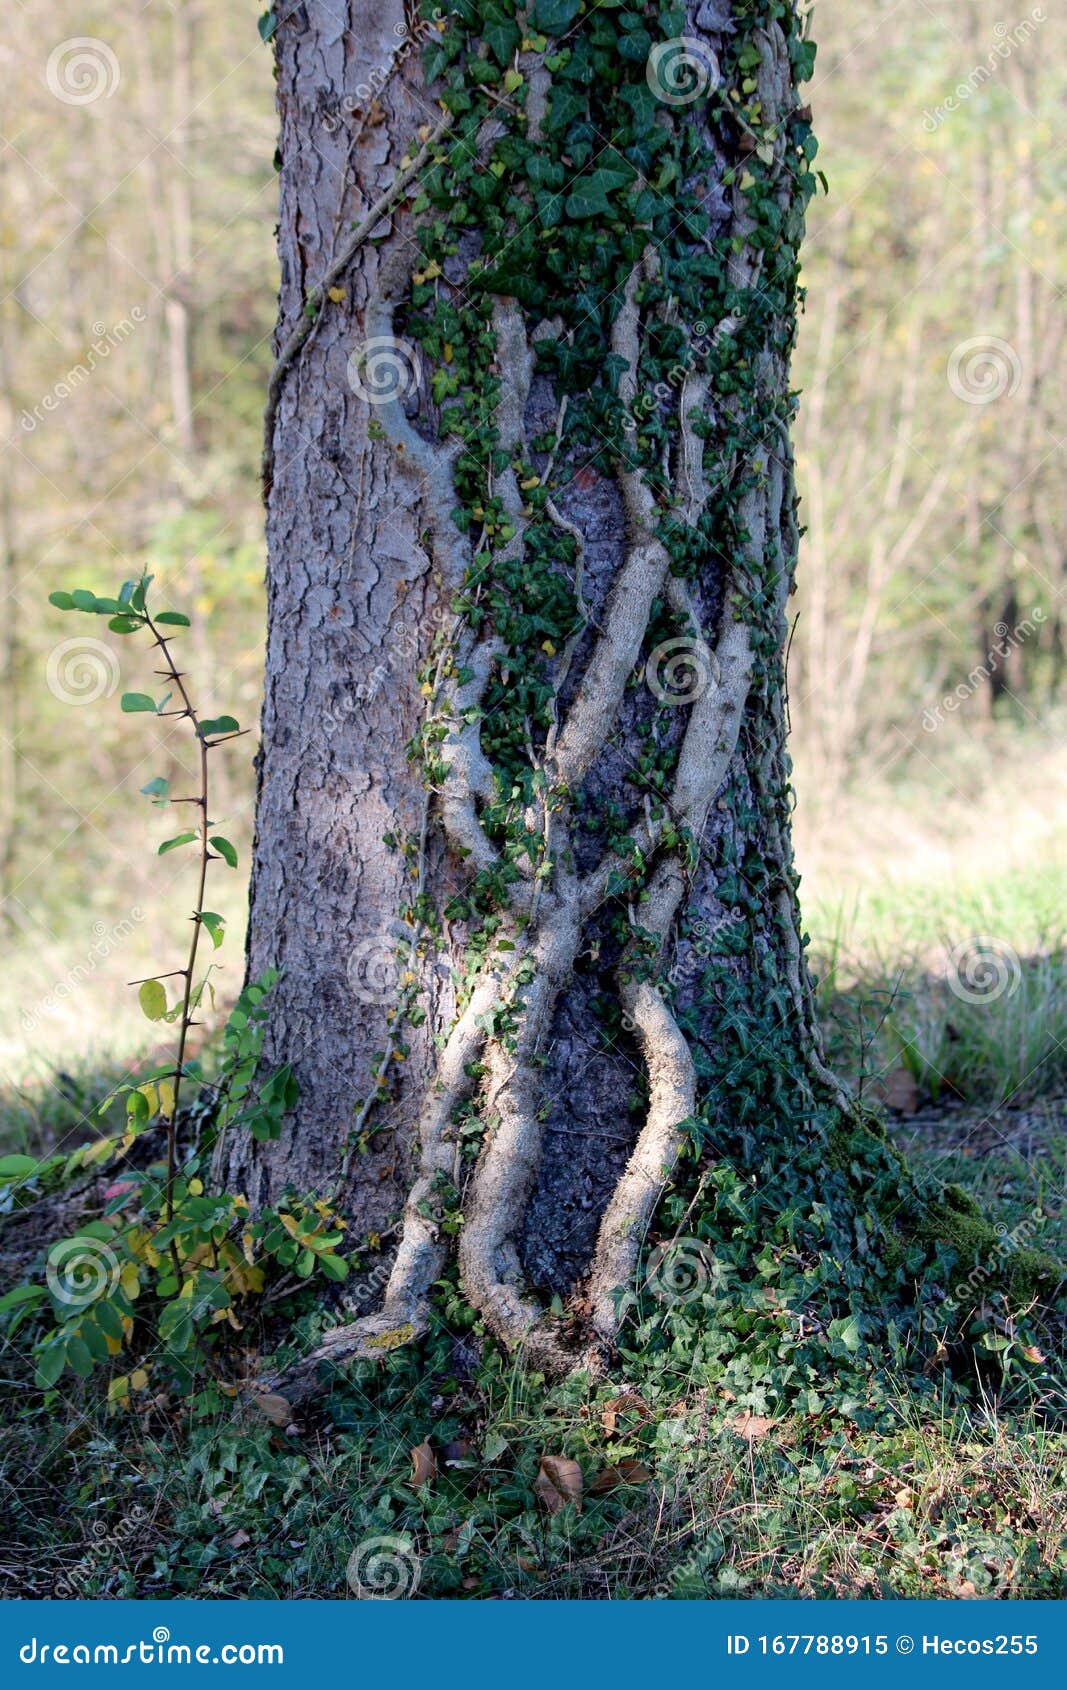 Gammal, tjock crawlningsväxt med färska mörkgröna blad som växer över trädkotten omgiven av gräs och andra träd i lokal skog. Gammal, tjock crawlningsväxt med färska mörkgröna blad som växer över stora trädkottar omgivna av gräs och andra träd i lokal skog på varm solig höstdag